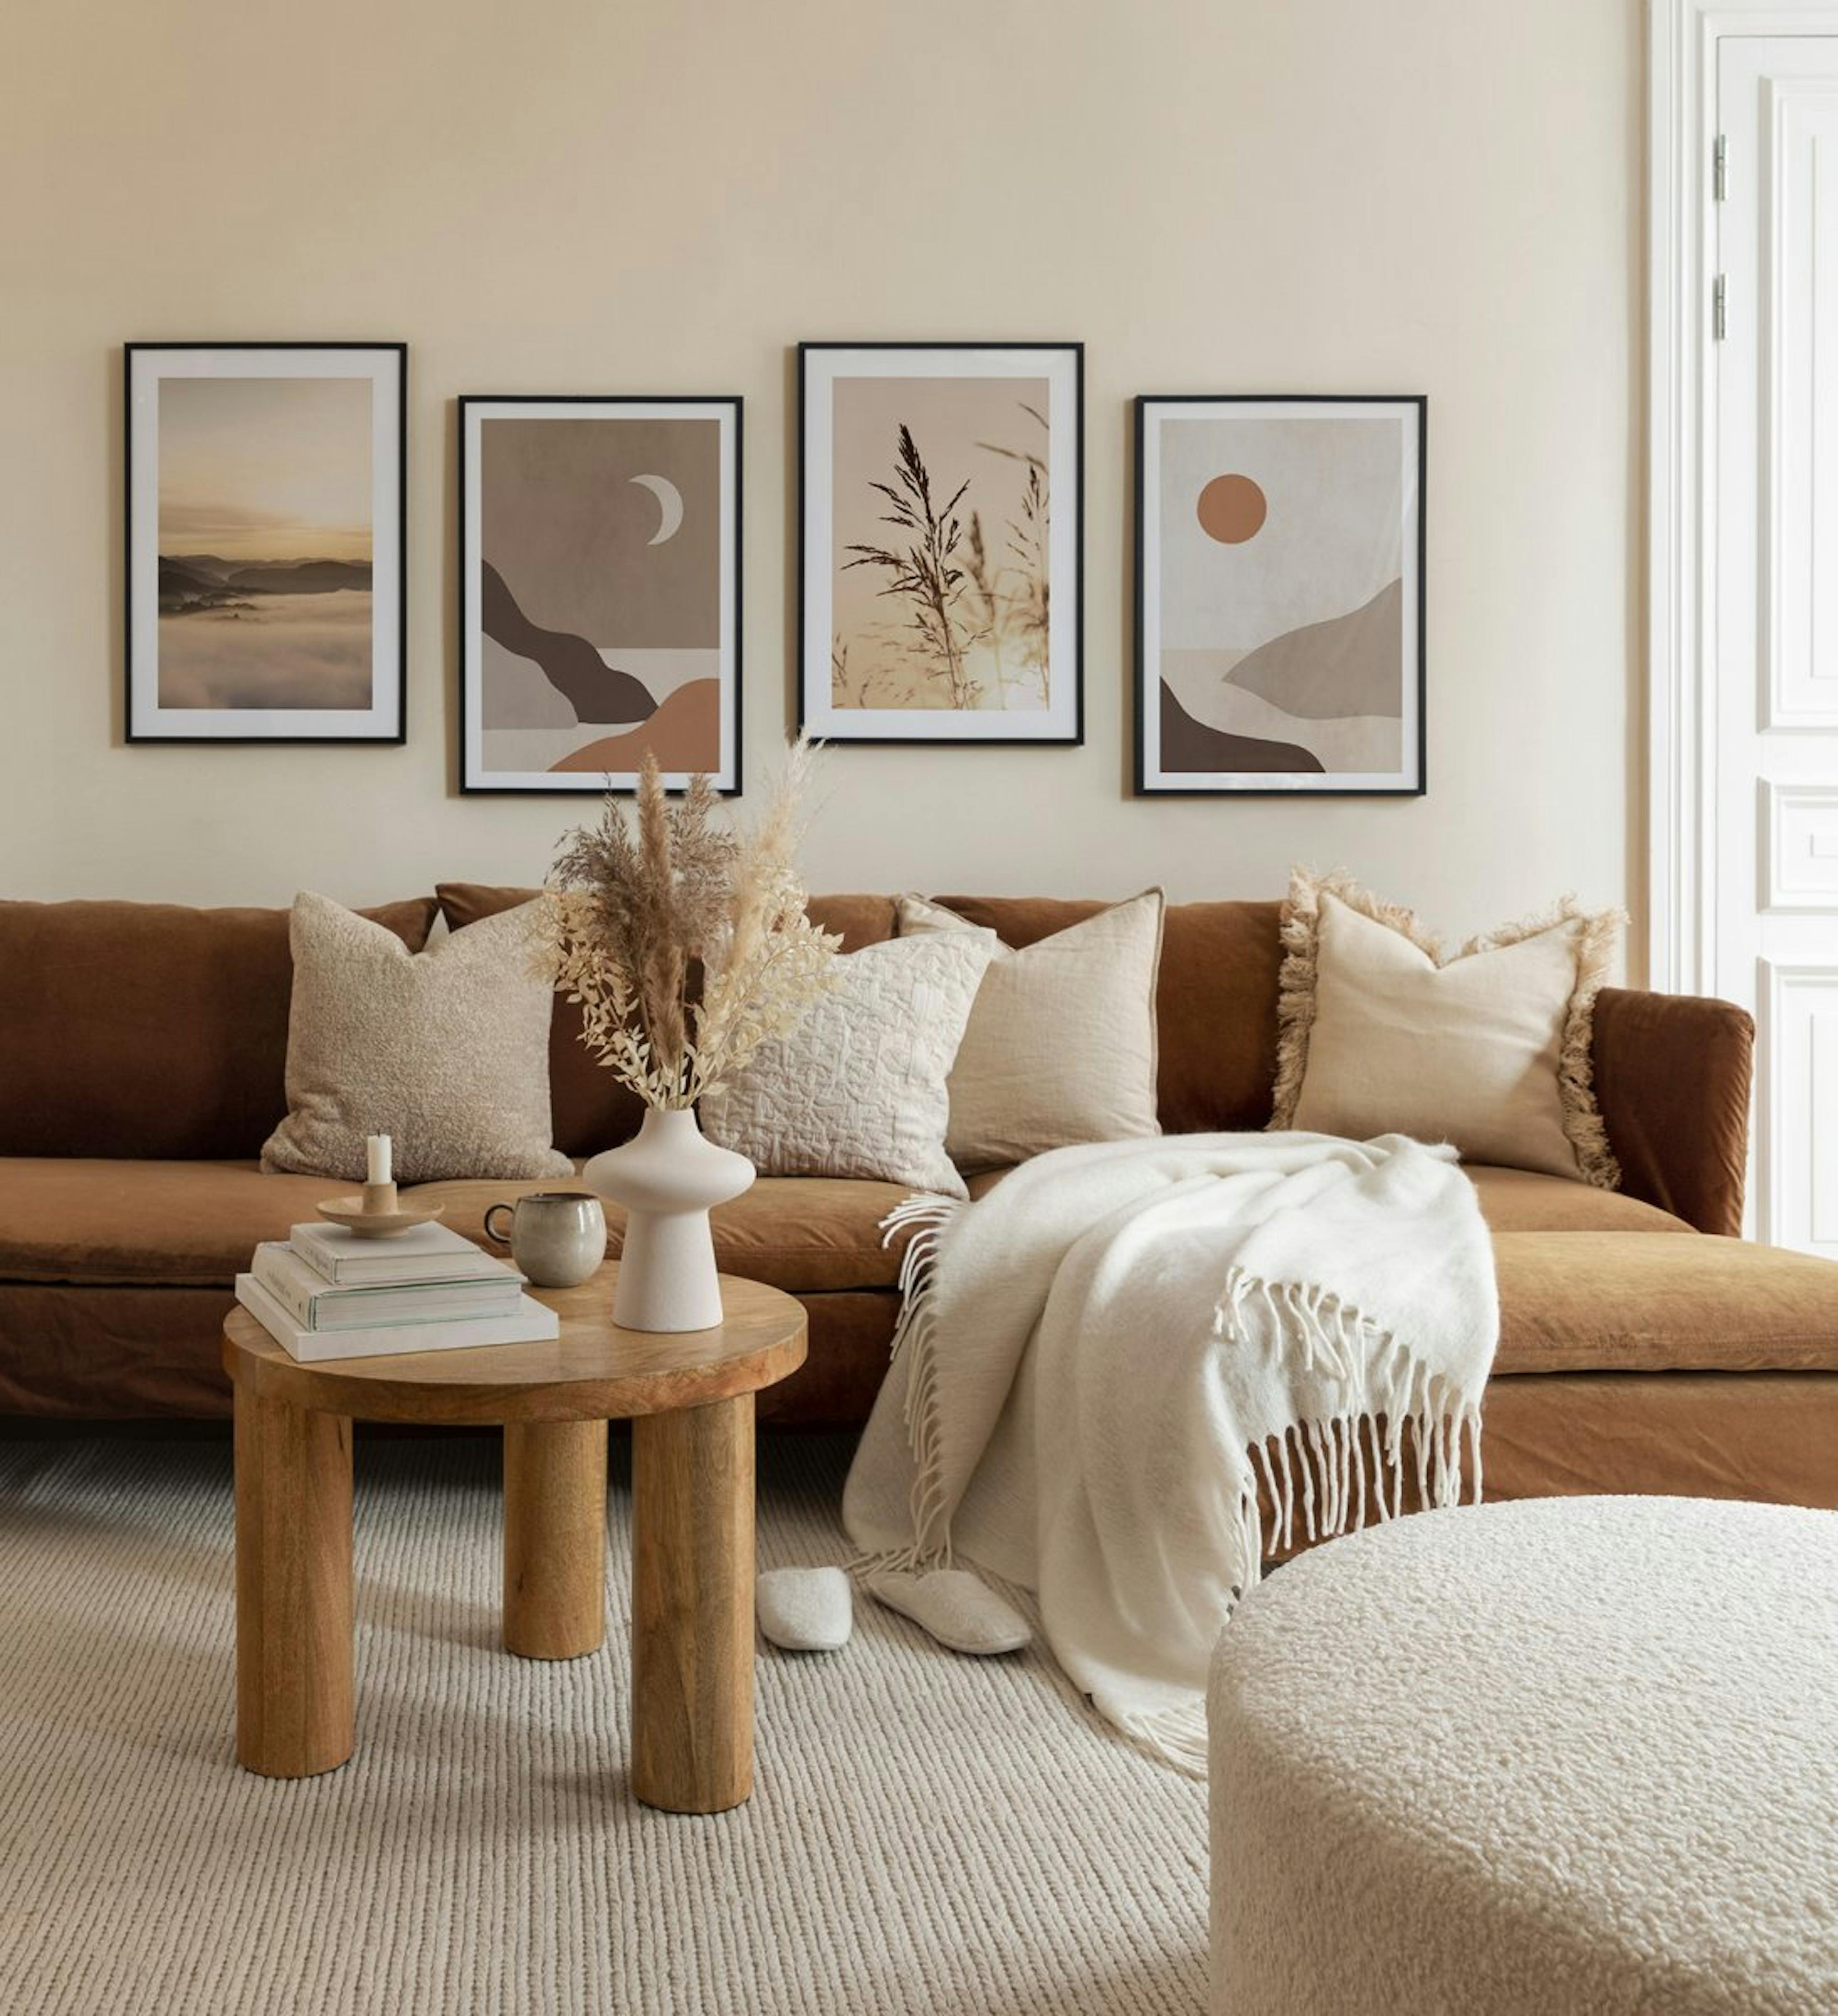 Serena galleria a parete nelle tonalità del marrone e del beige con stampe paesaggistiche e cornici in legno scuro per il soggio